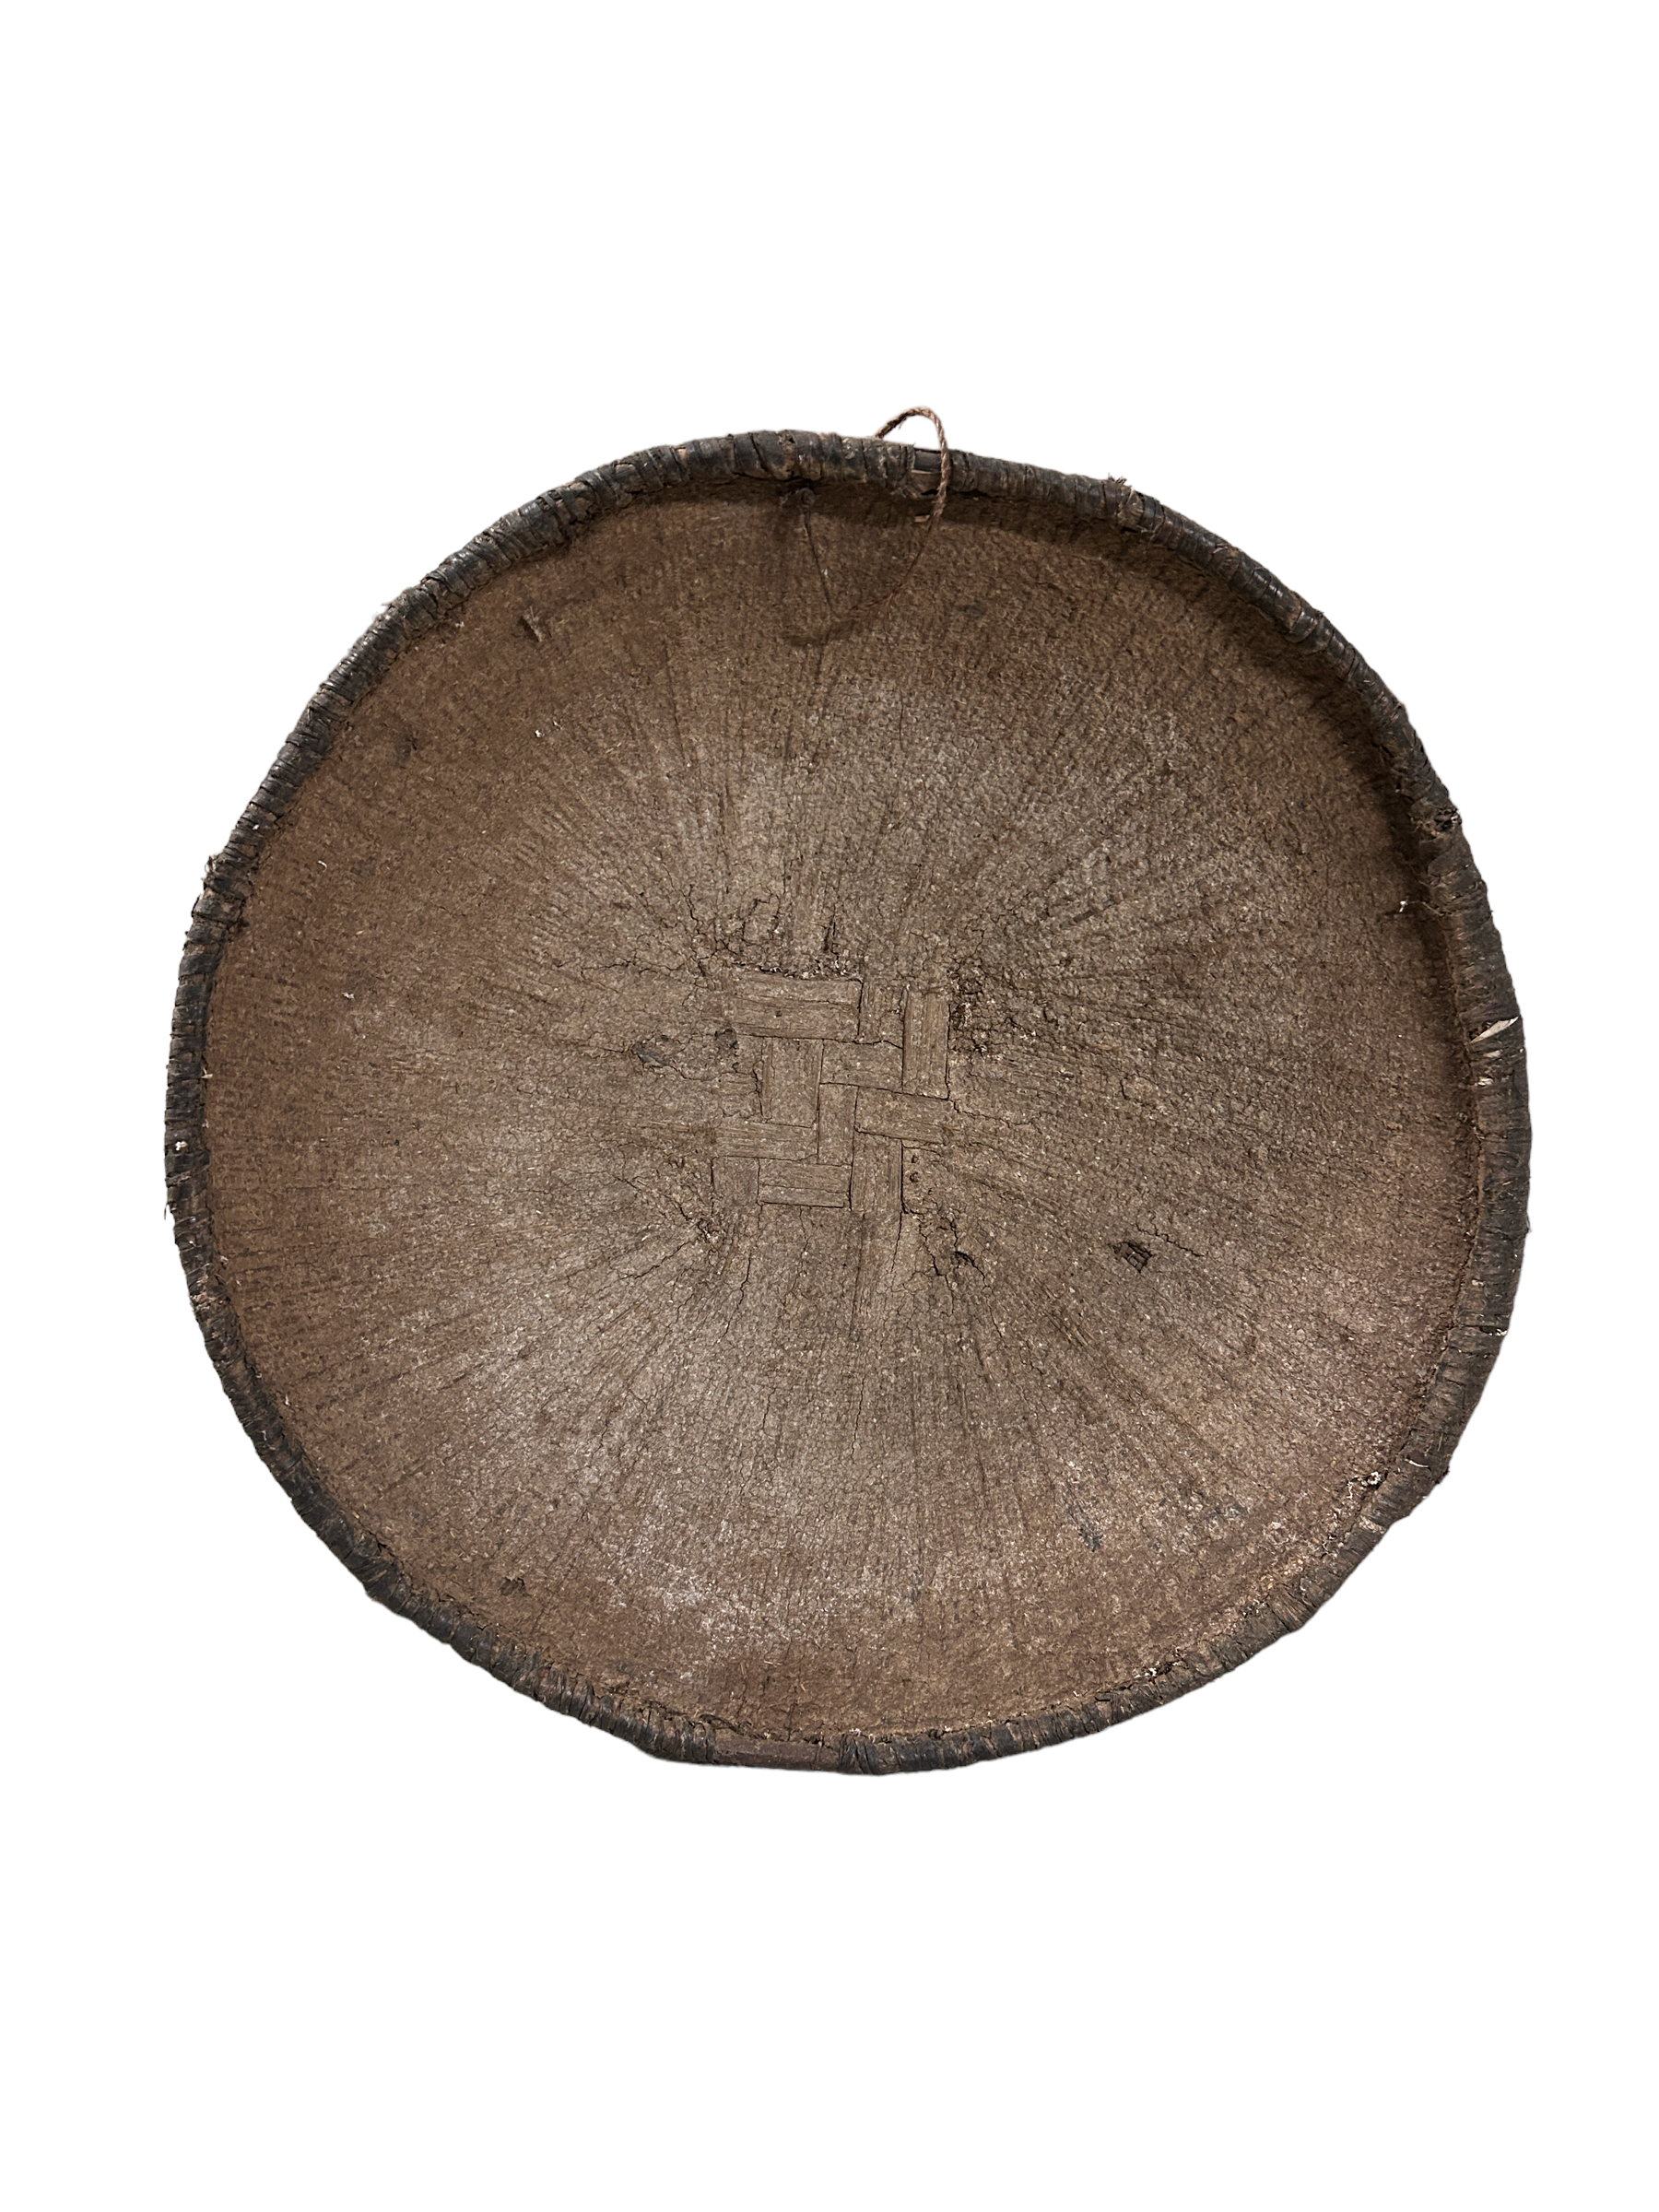 botanicalboysuk Vintage Tonga Binga Basket (48.13)